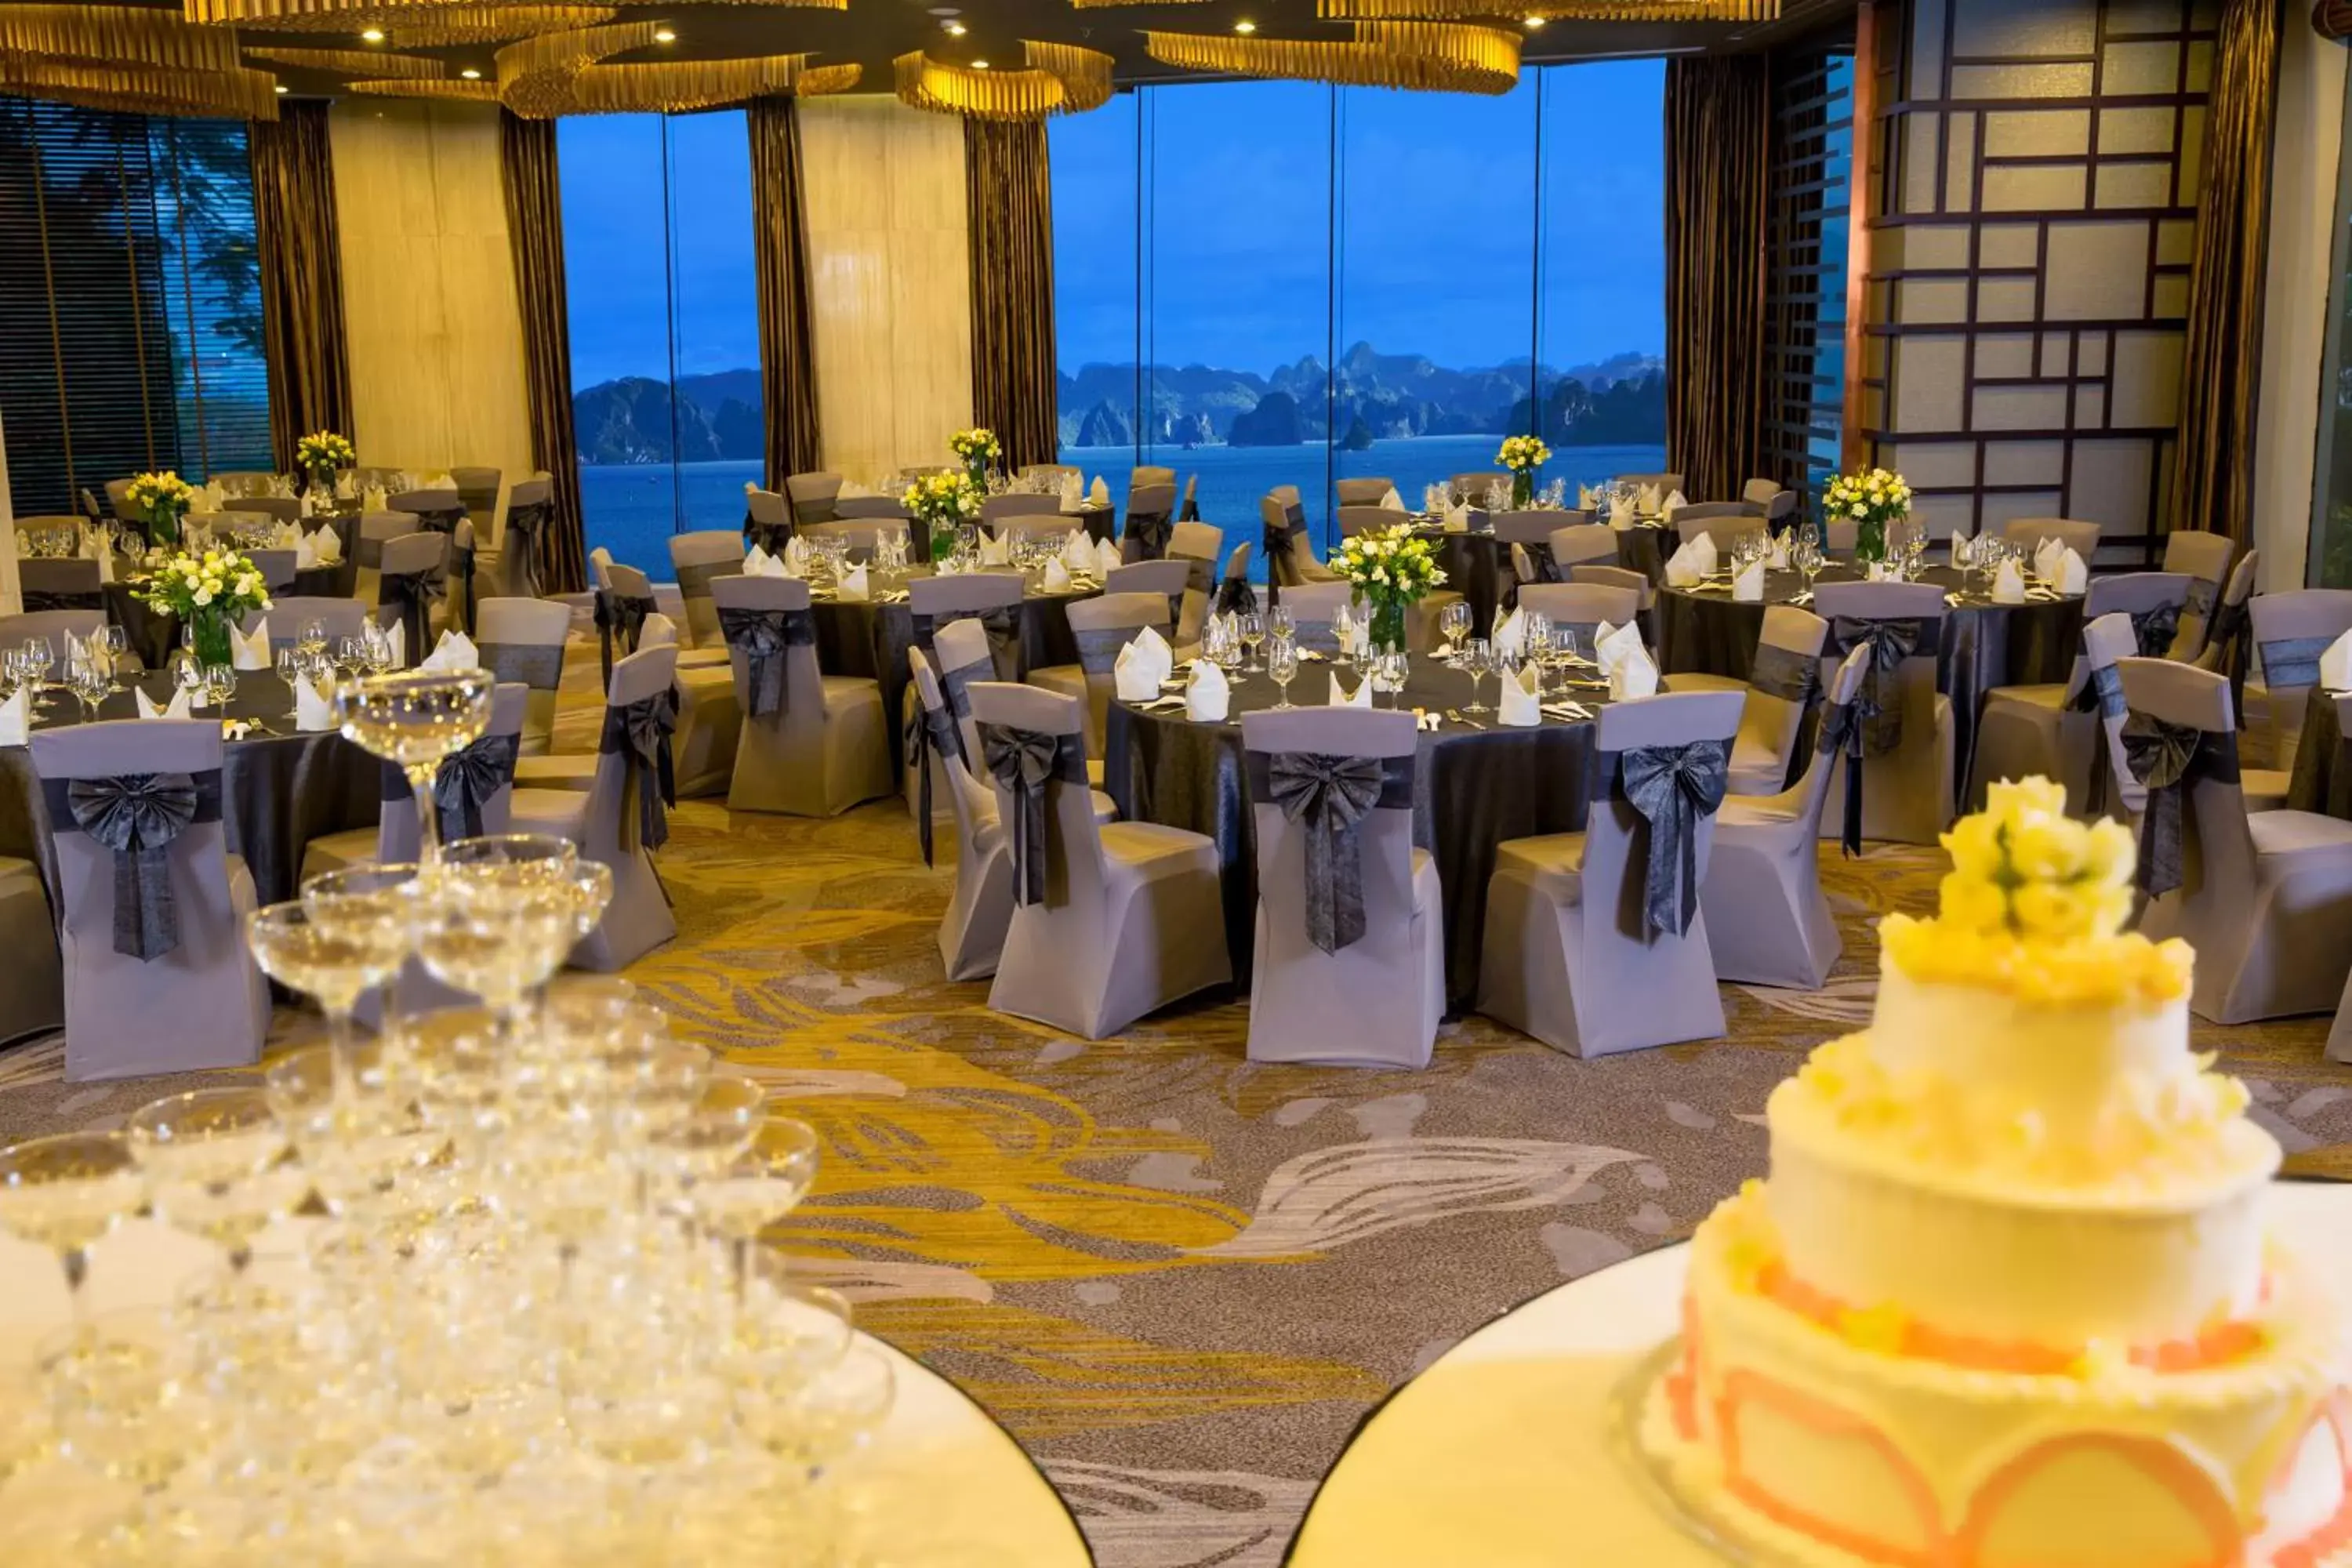 Banquet/Function facilities, Banquet Facilities in Novotel Ha Long Bay Hotel